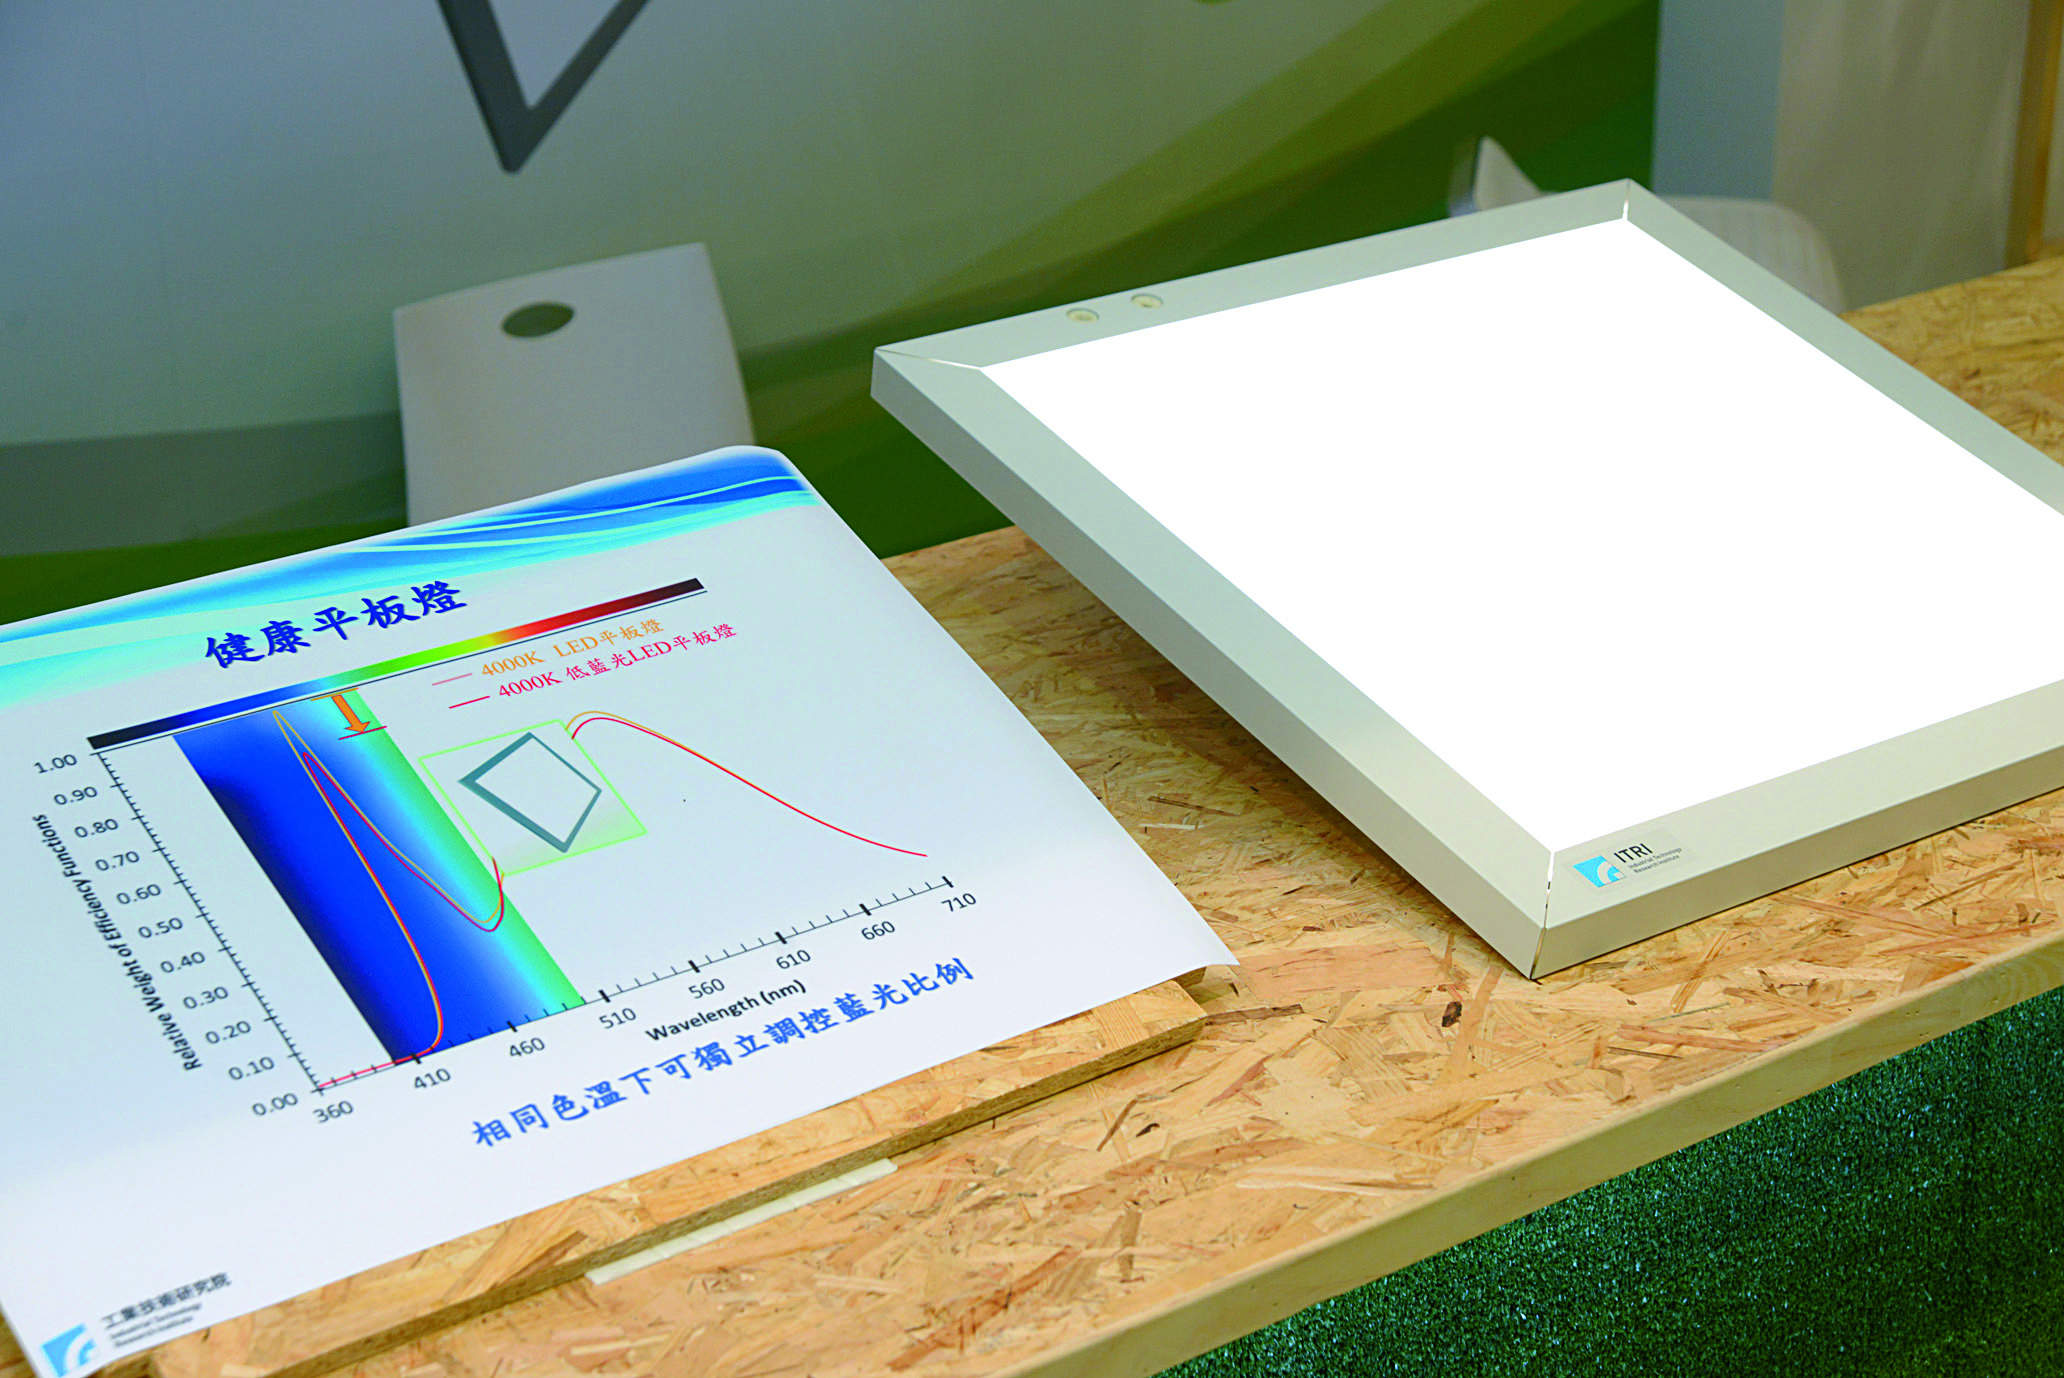 自主調控健康平板燈，可依健康配方動態調控照度、色溫與藍光含量比例，提供真智慧的人因照明。